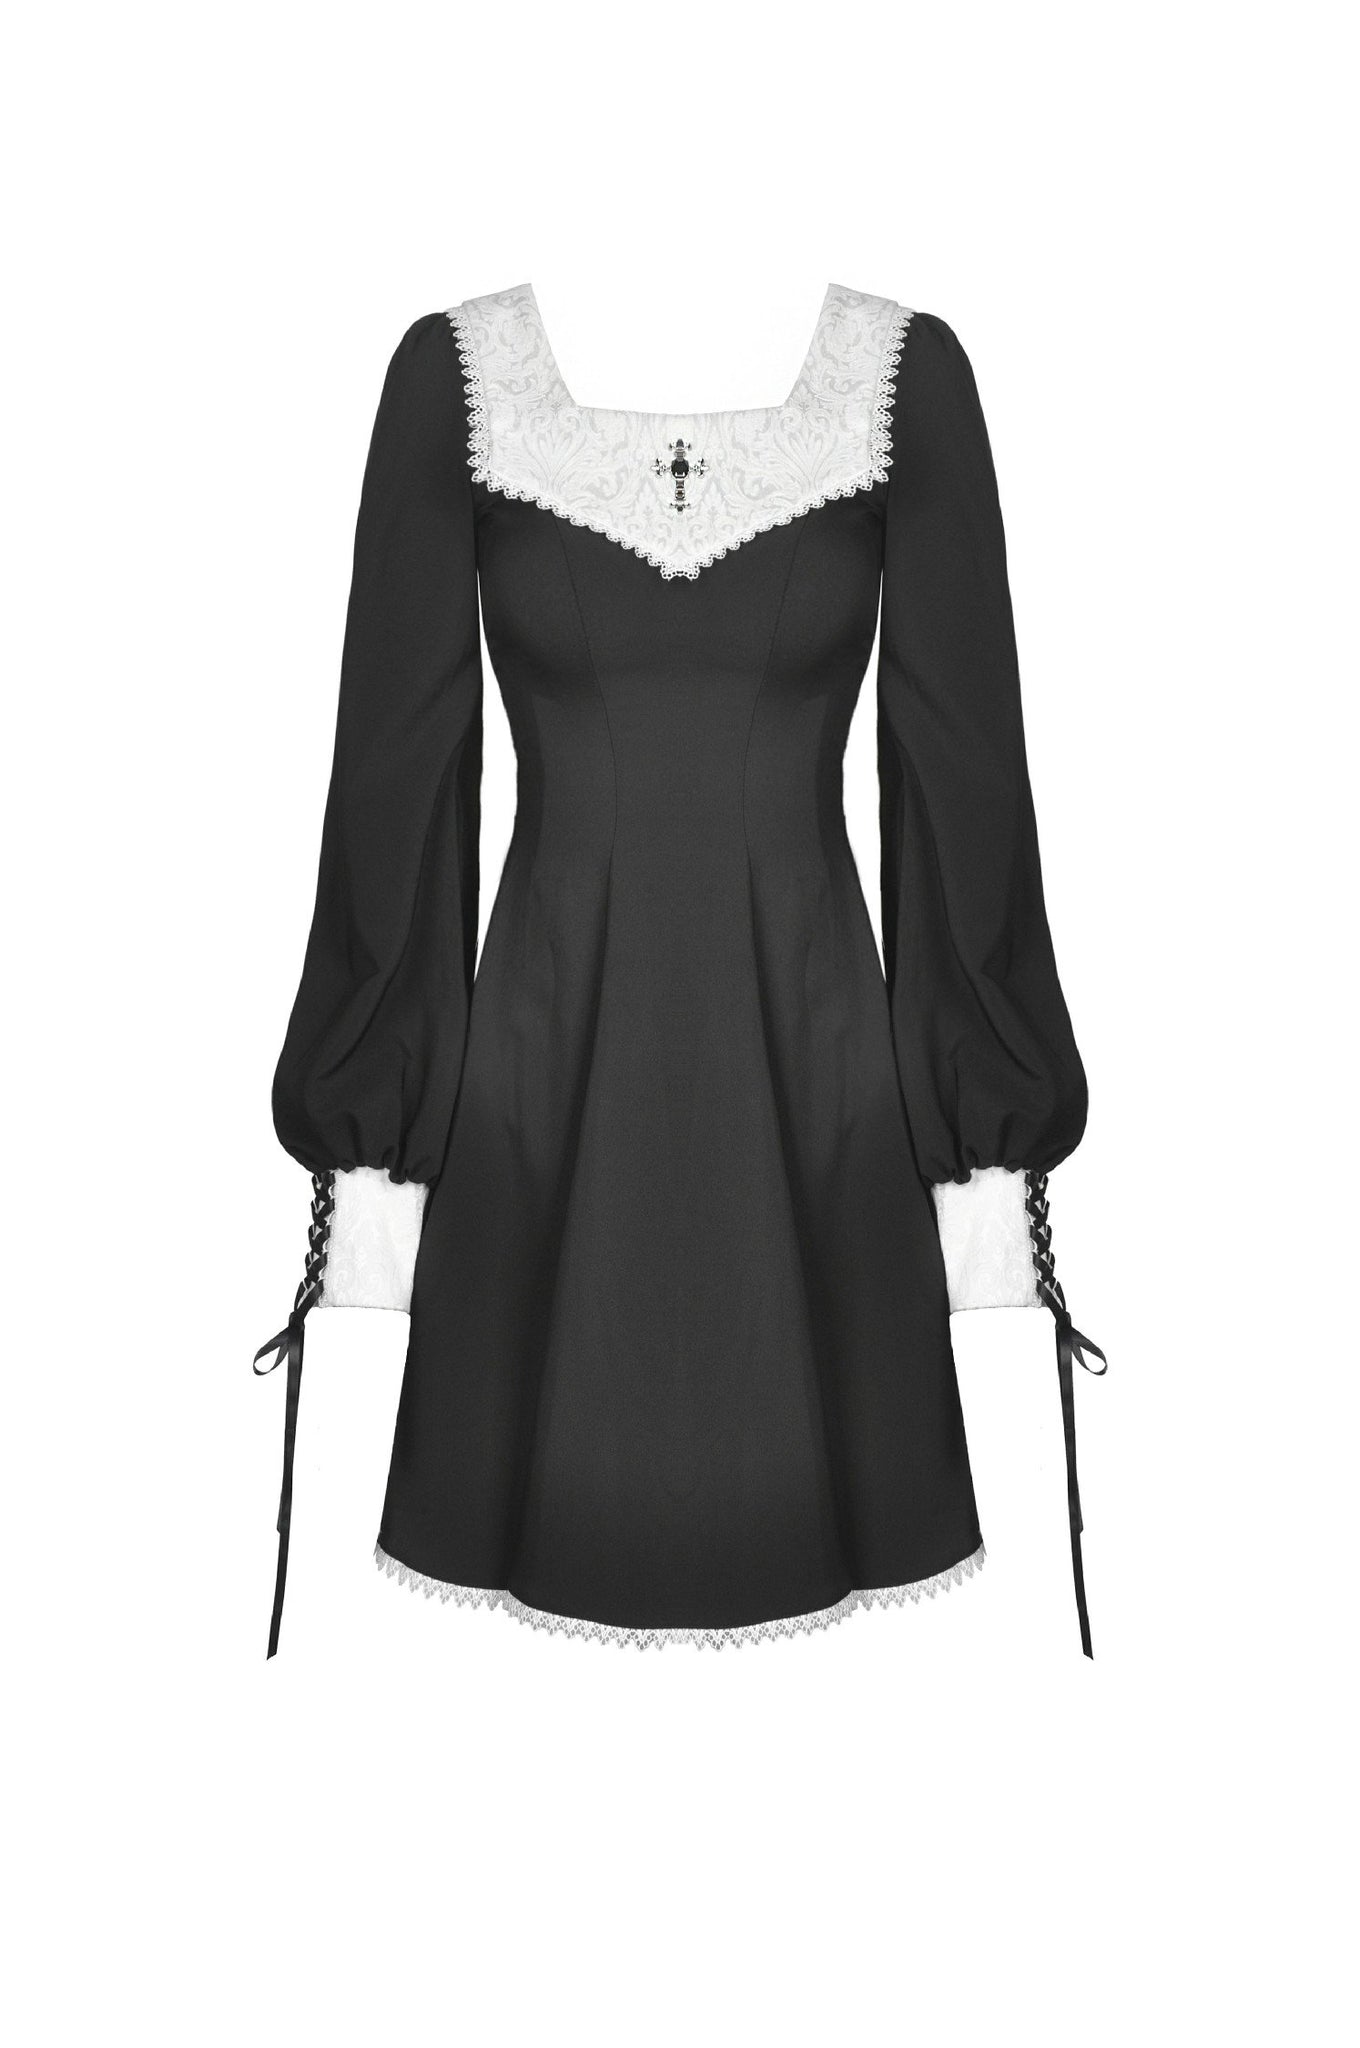 Gothic ghost white collar dress DW450 – DARK IN LOVE